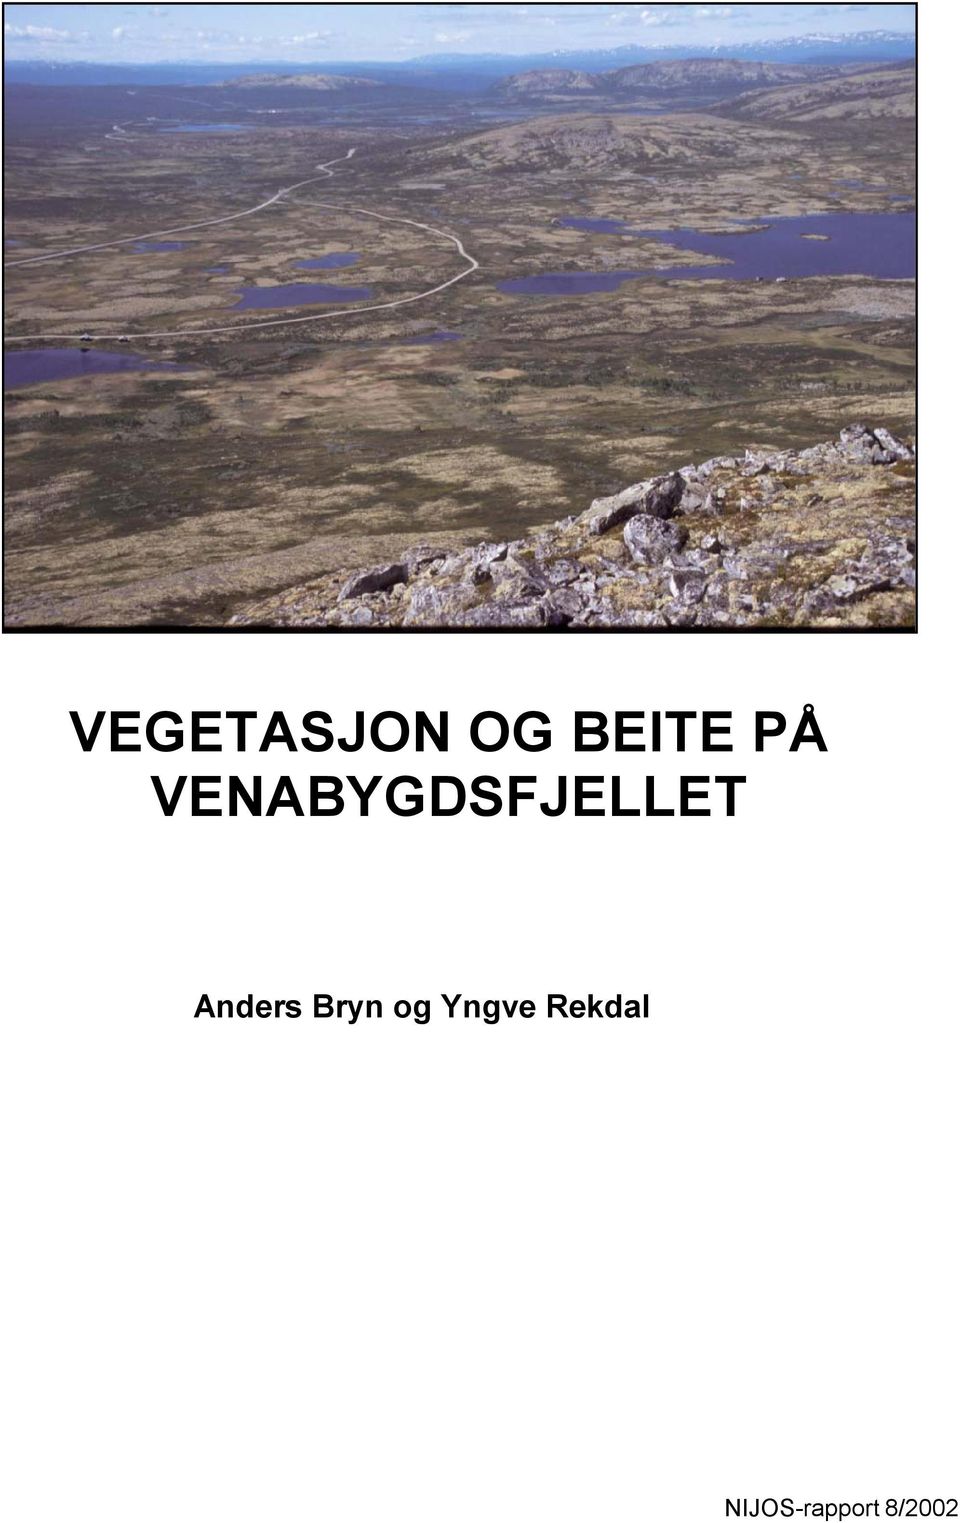 Anders Bryn og Yngve